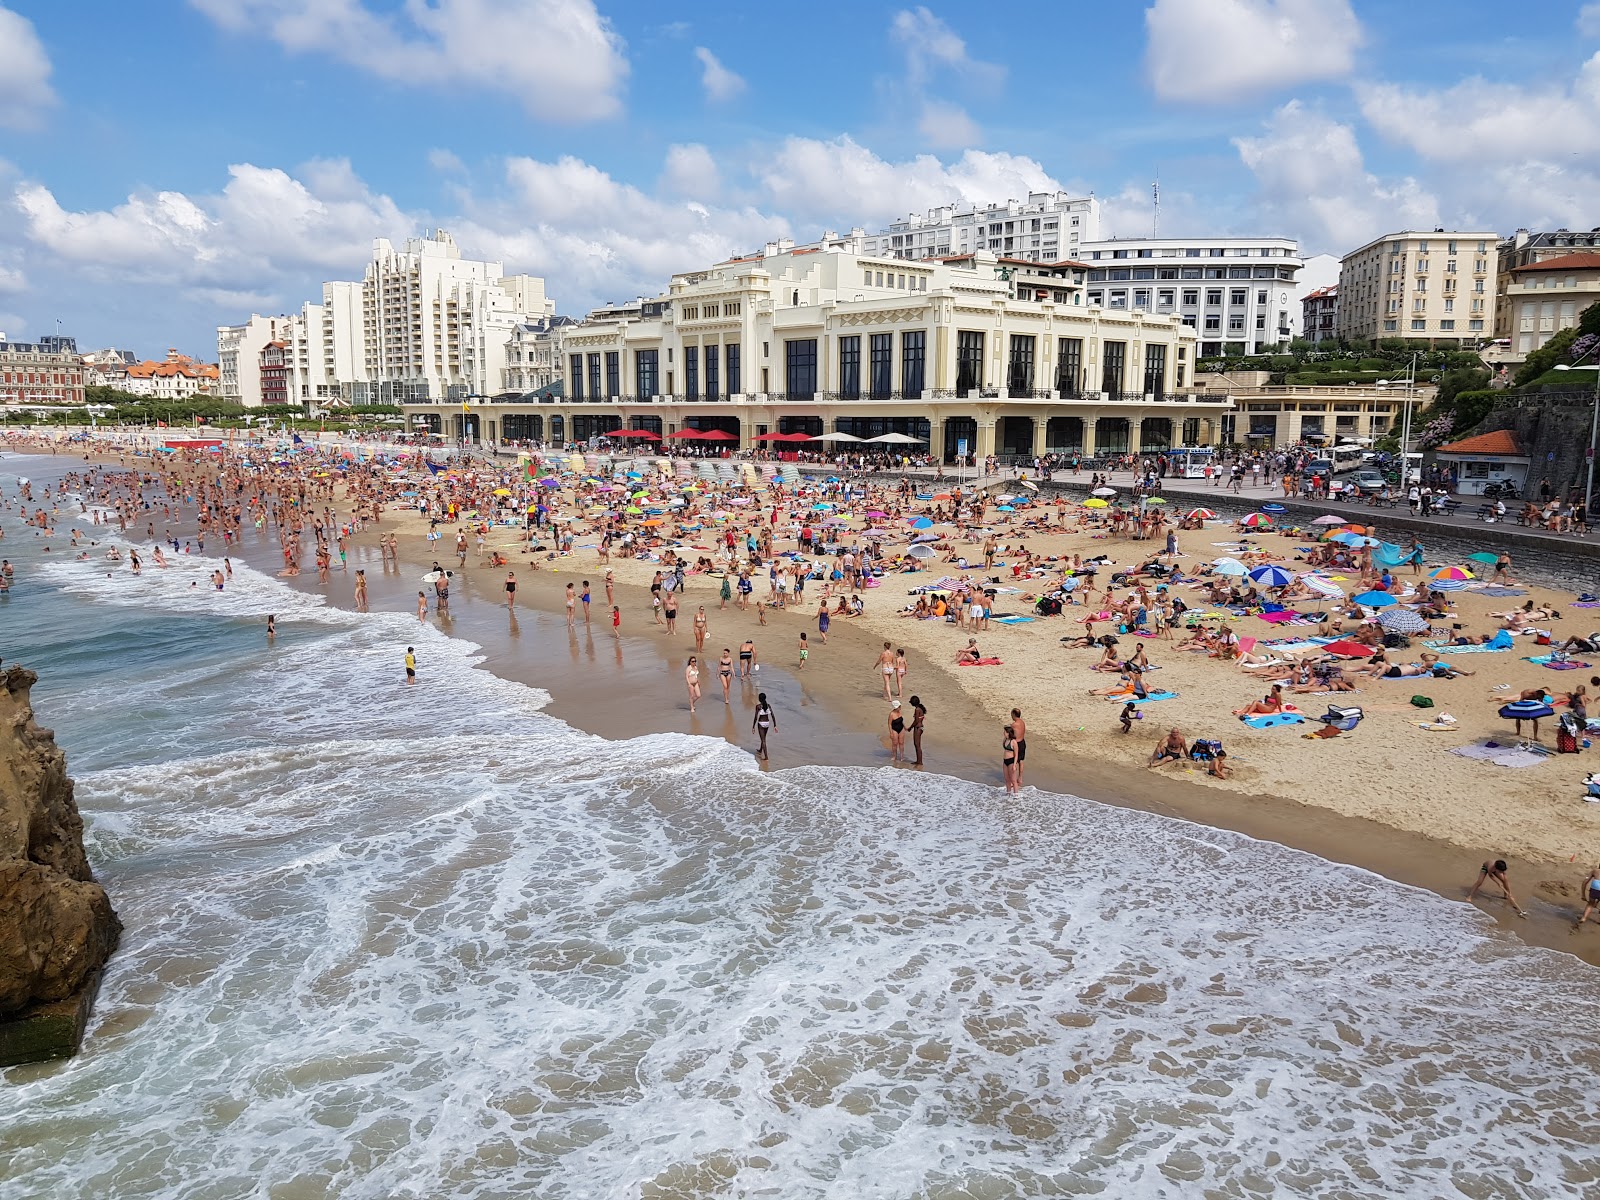 Foto von Plage de Biarritz mit geräumiger strand